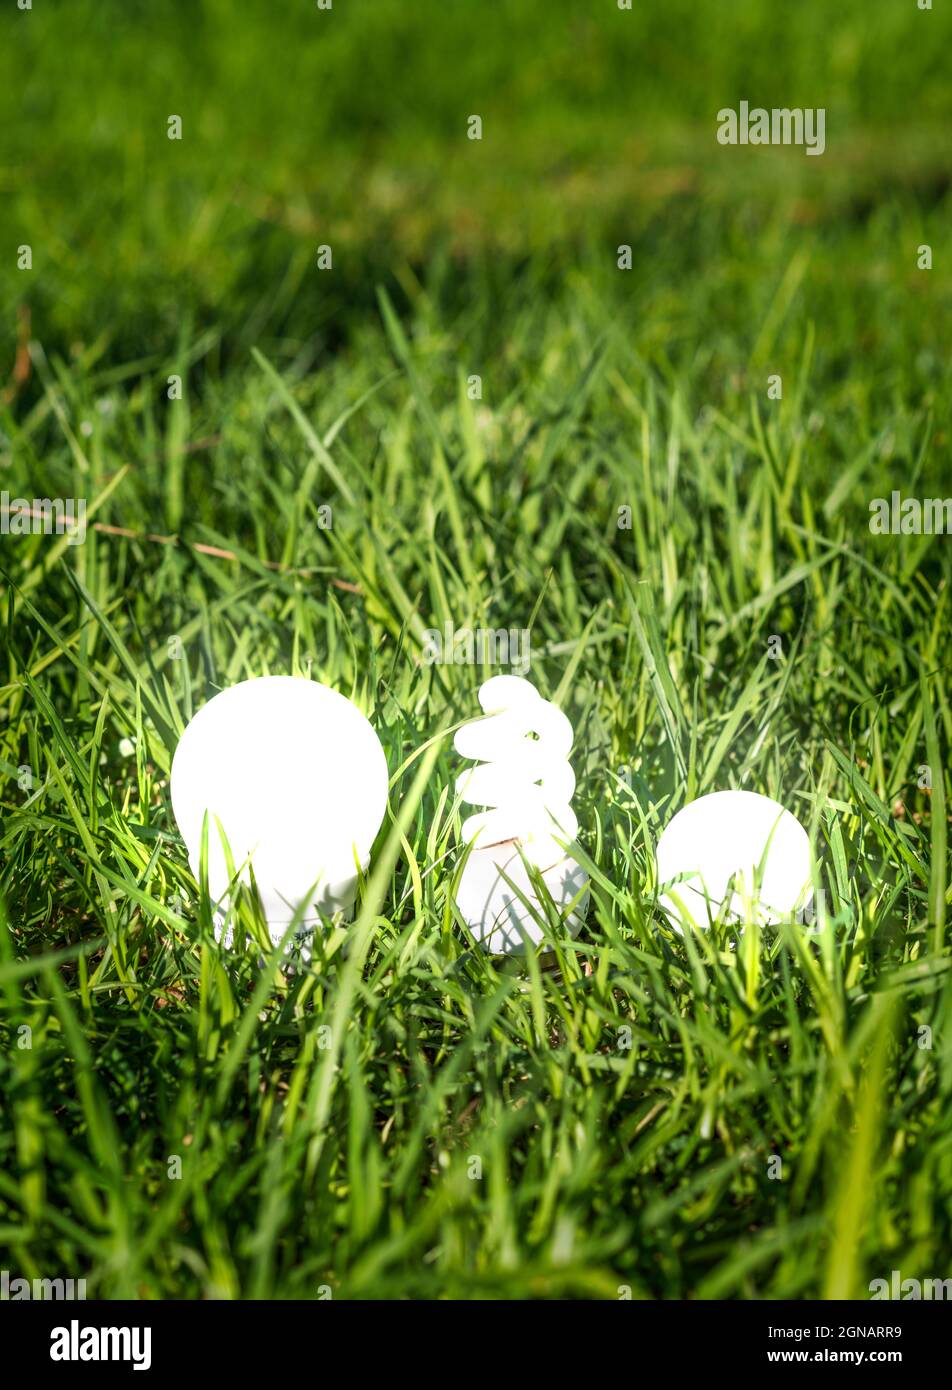 Glühbirnen leuchten auf dem Gras. Konzeptionelle Fotografie, die die Bedeutung der Verwendung grüner und sauberer Energie für die Umwelt zeigt. Stockfoto